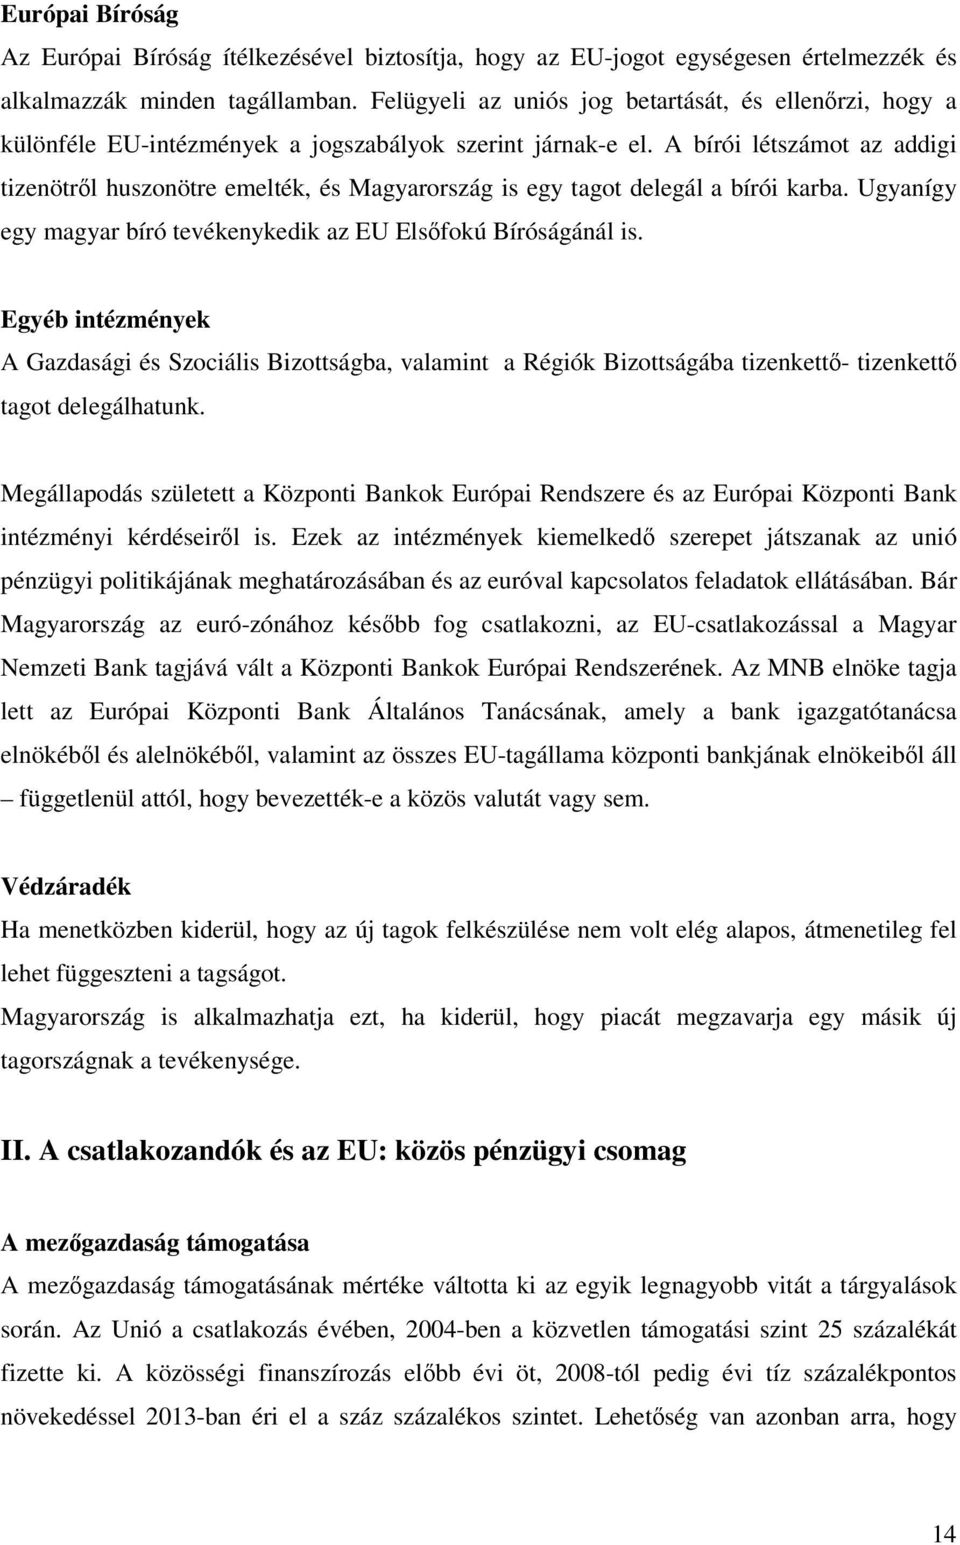 A bírói létszámot az addigi tizenötről huszonötre emelték, és Magyarország is egy tagot delegál a bírói karba. Ugyanígy egy magyar bíró tevékenykedik az EU Elsőfokú Bíróságánál is.